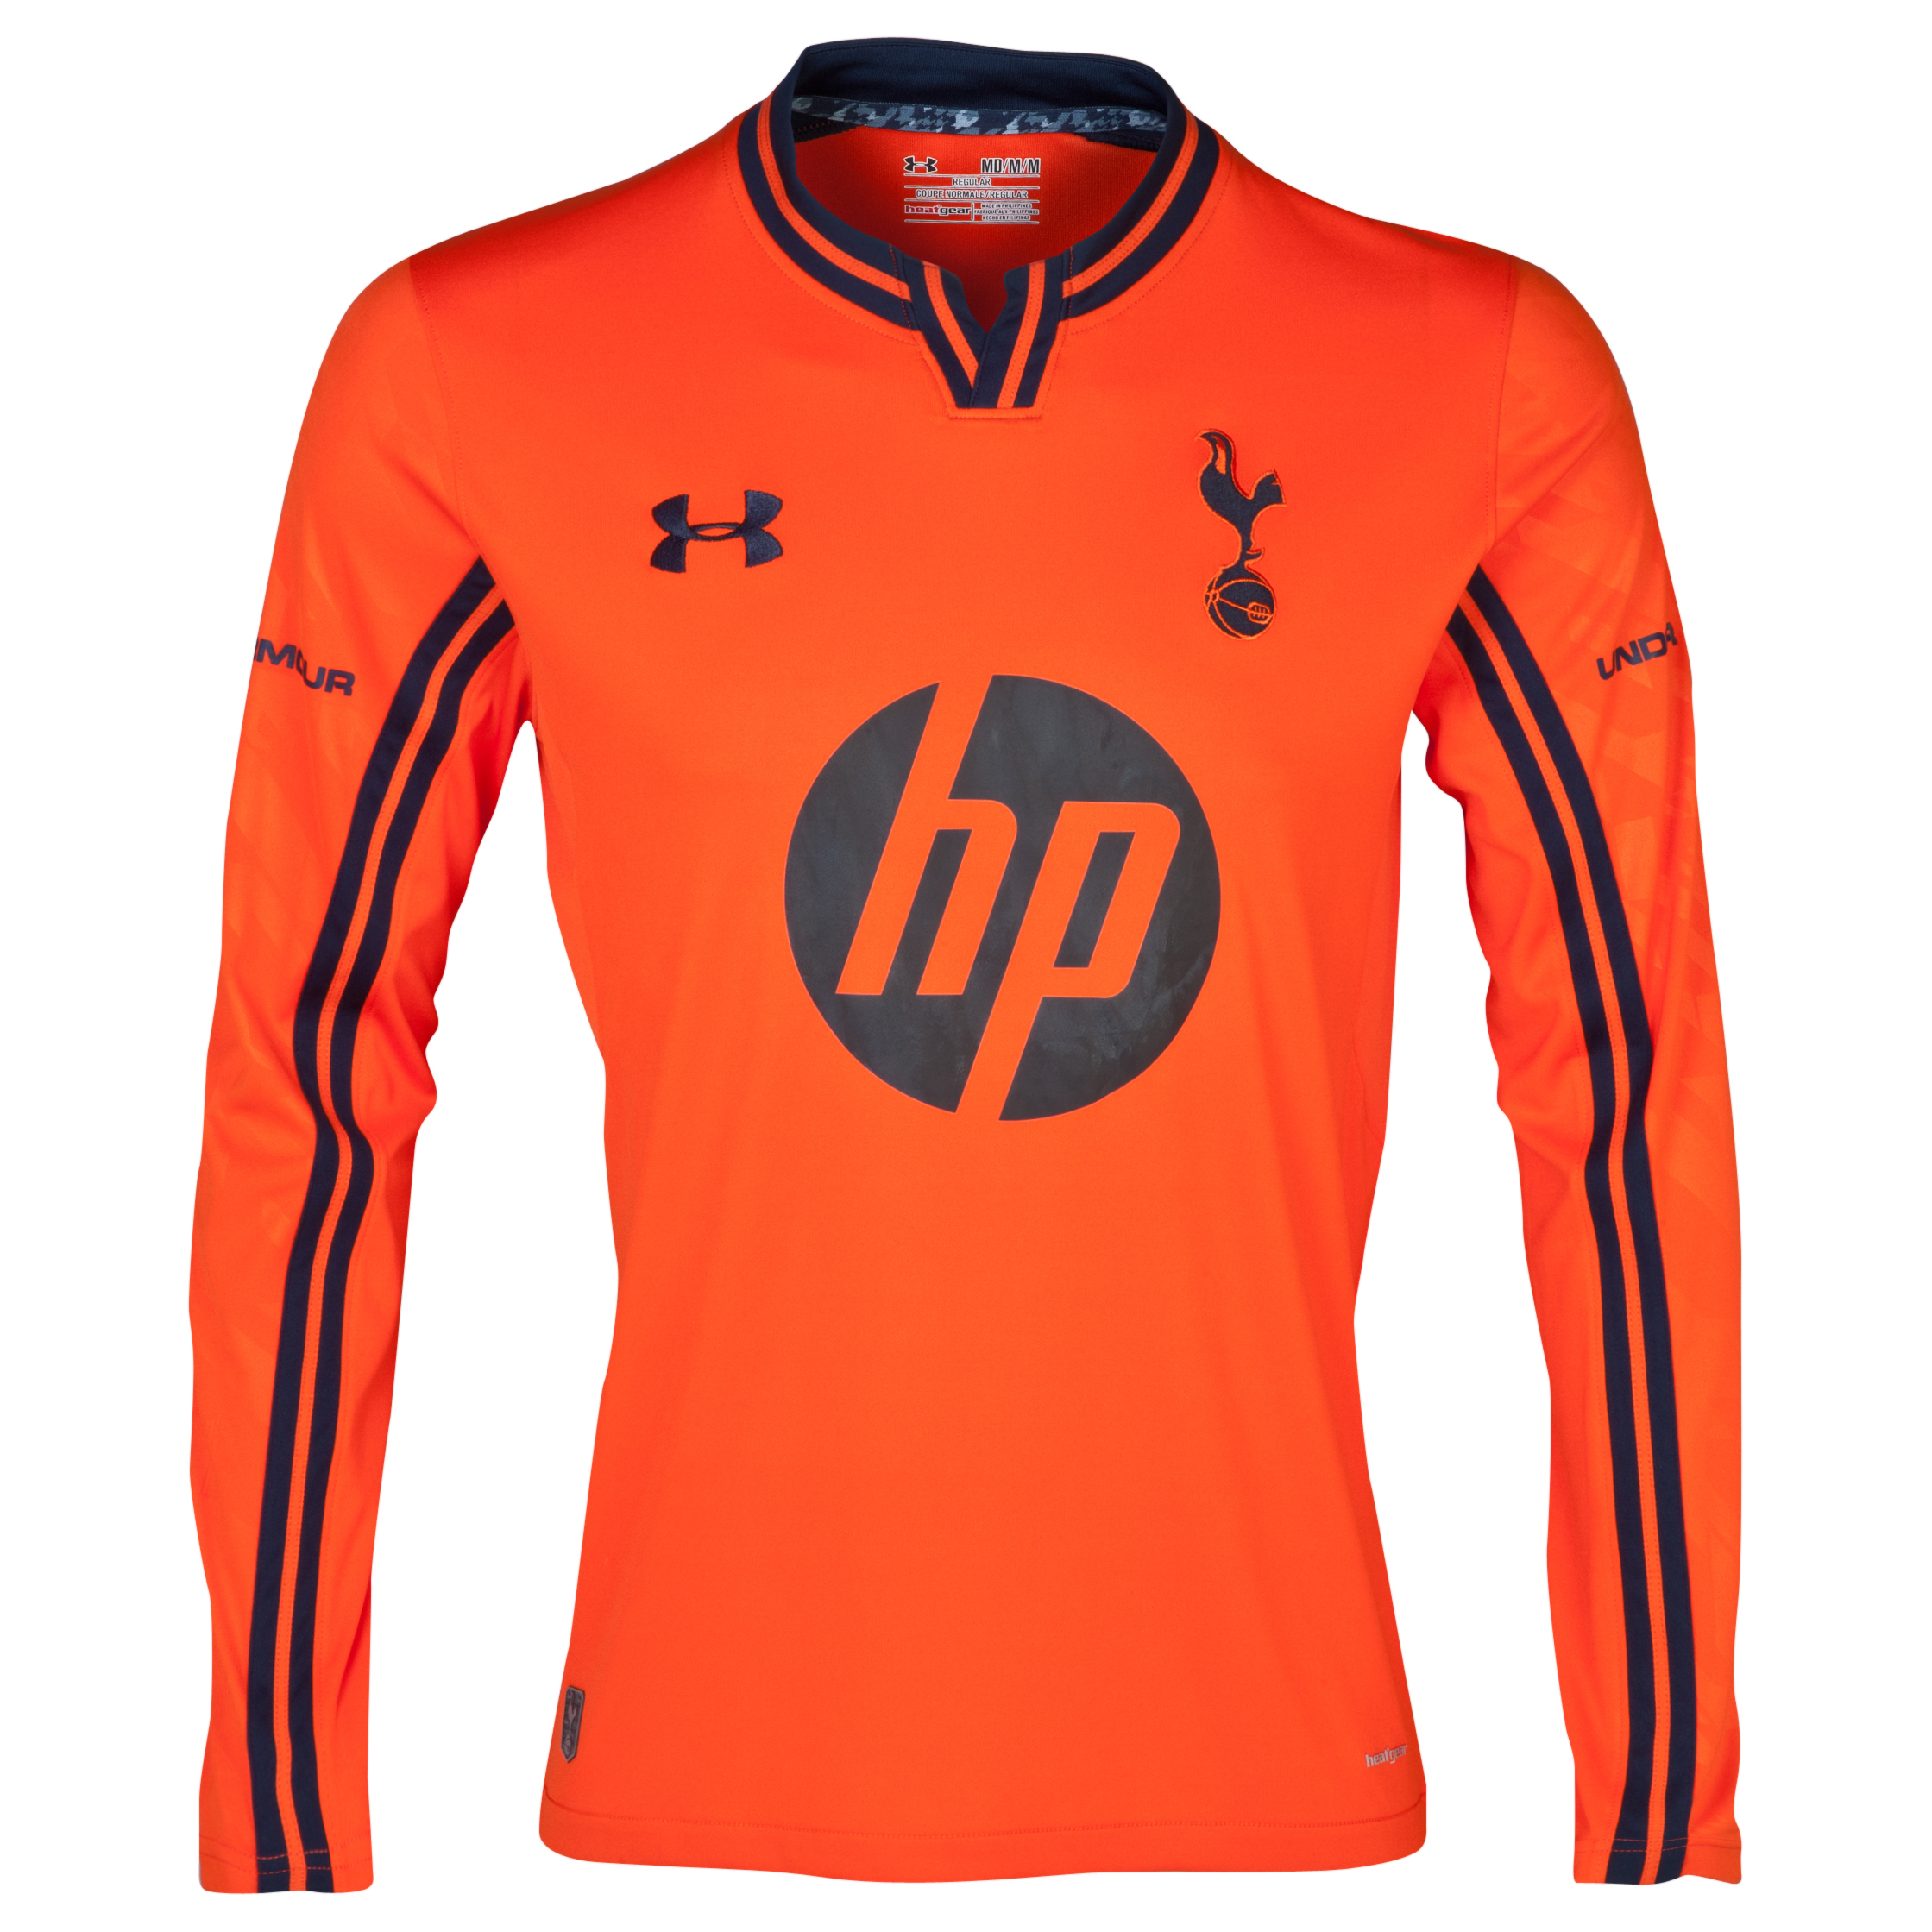 Tottenham Hotspur Home Goalkeeper Shirt 2013/14